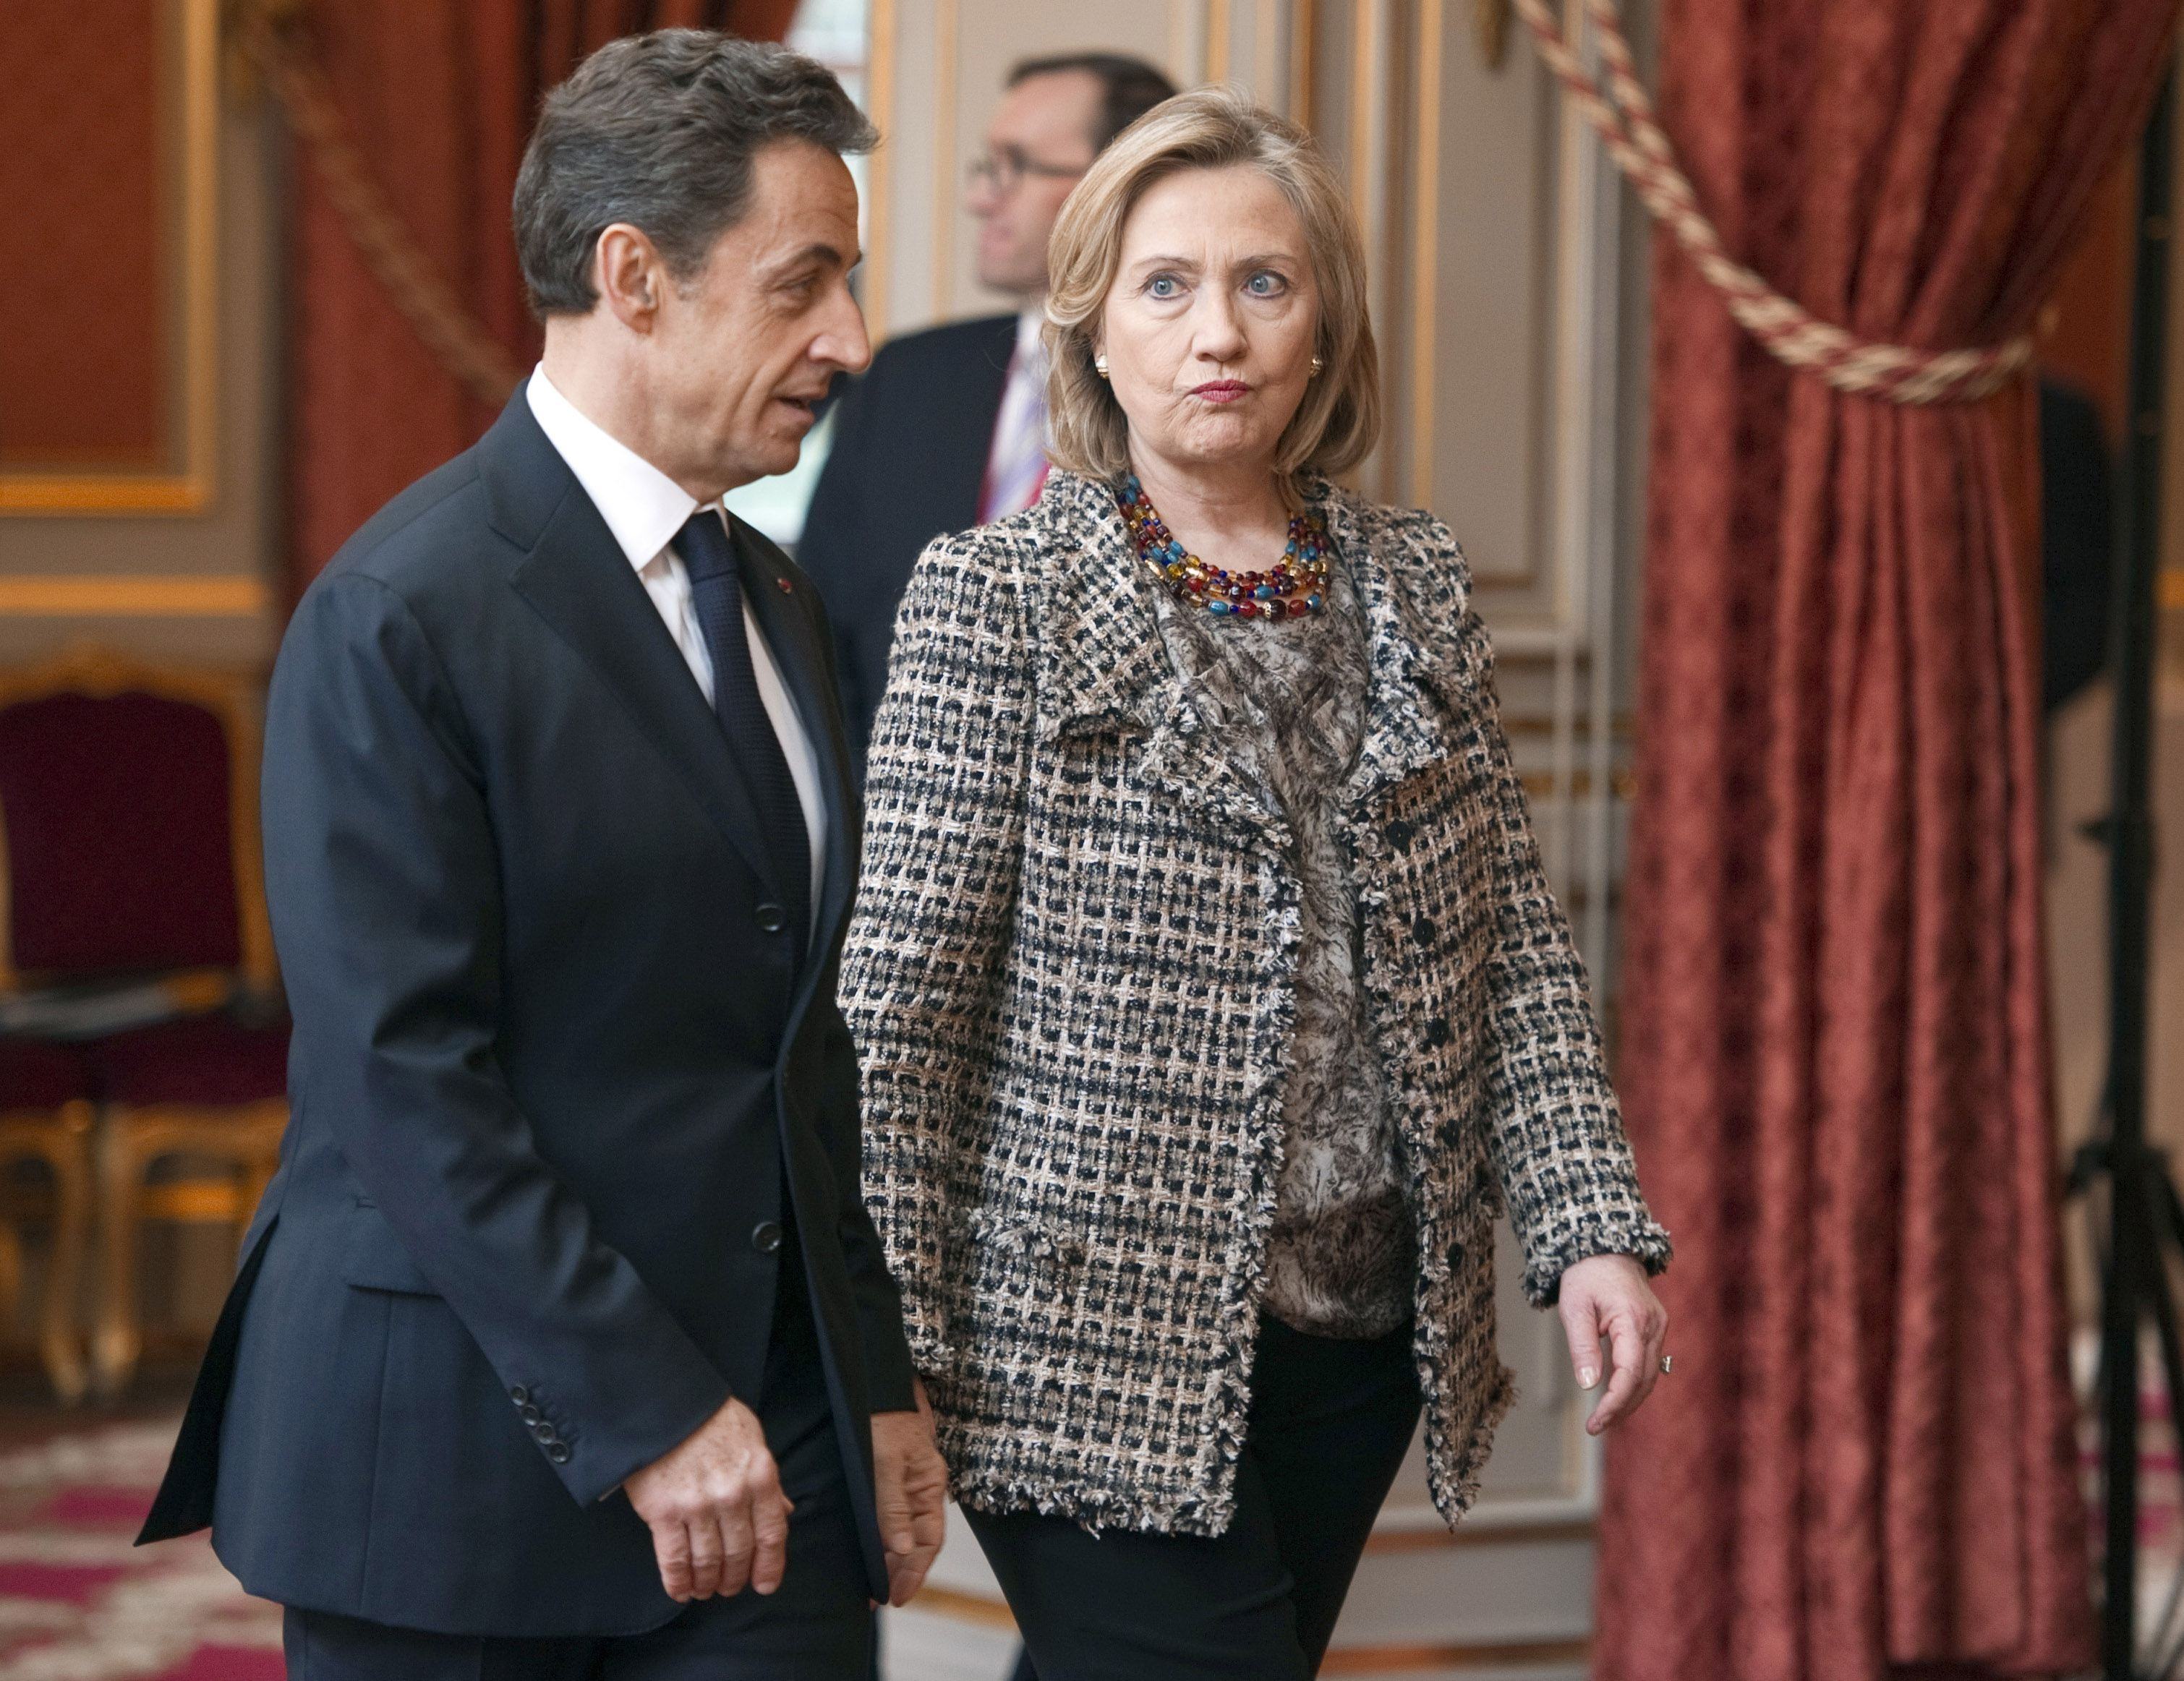 Nicolas Sarkozy ville inte att Nato skulle ta över ansvaret - men fick böja sig för USA och Storbritannien.